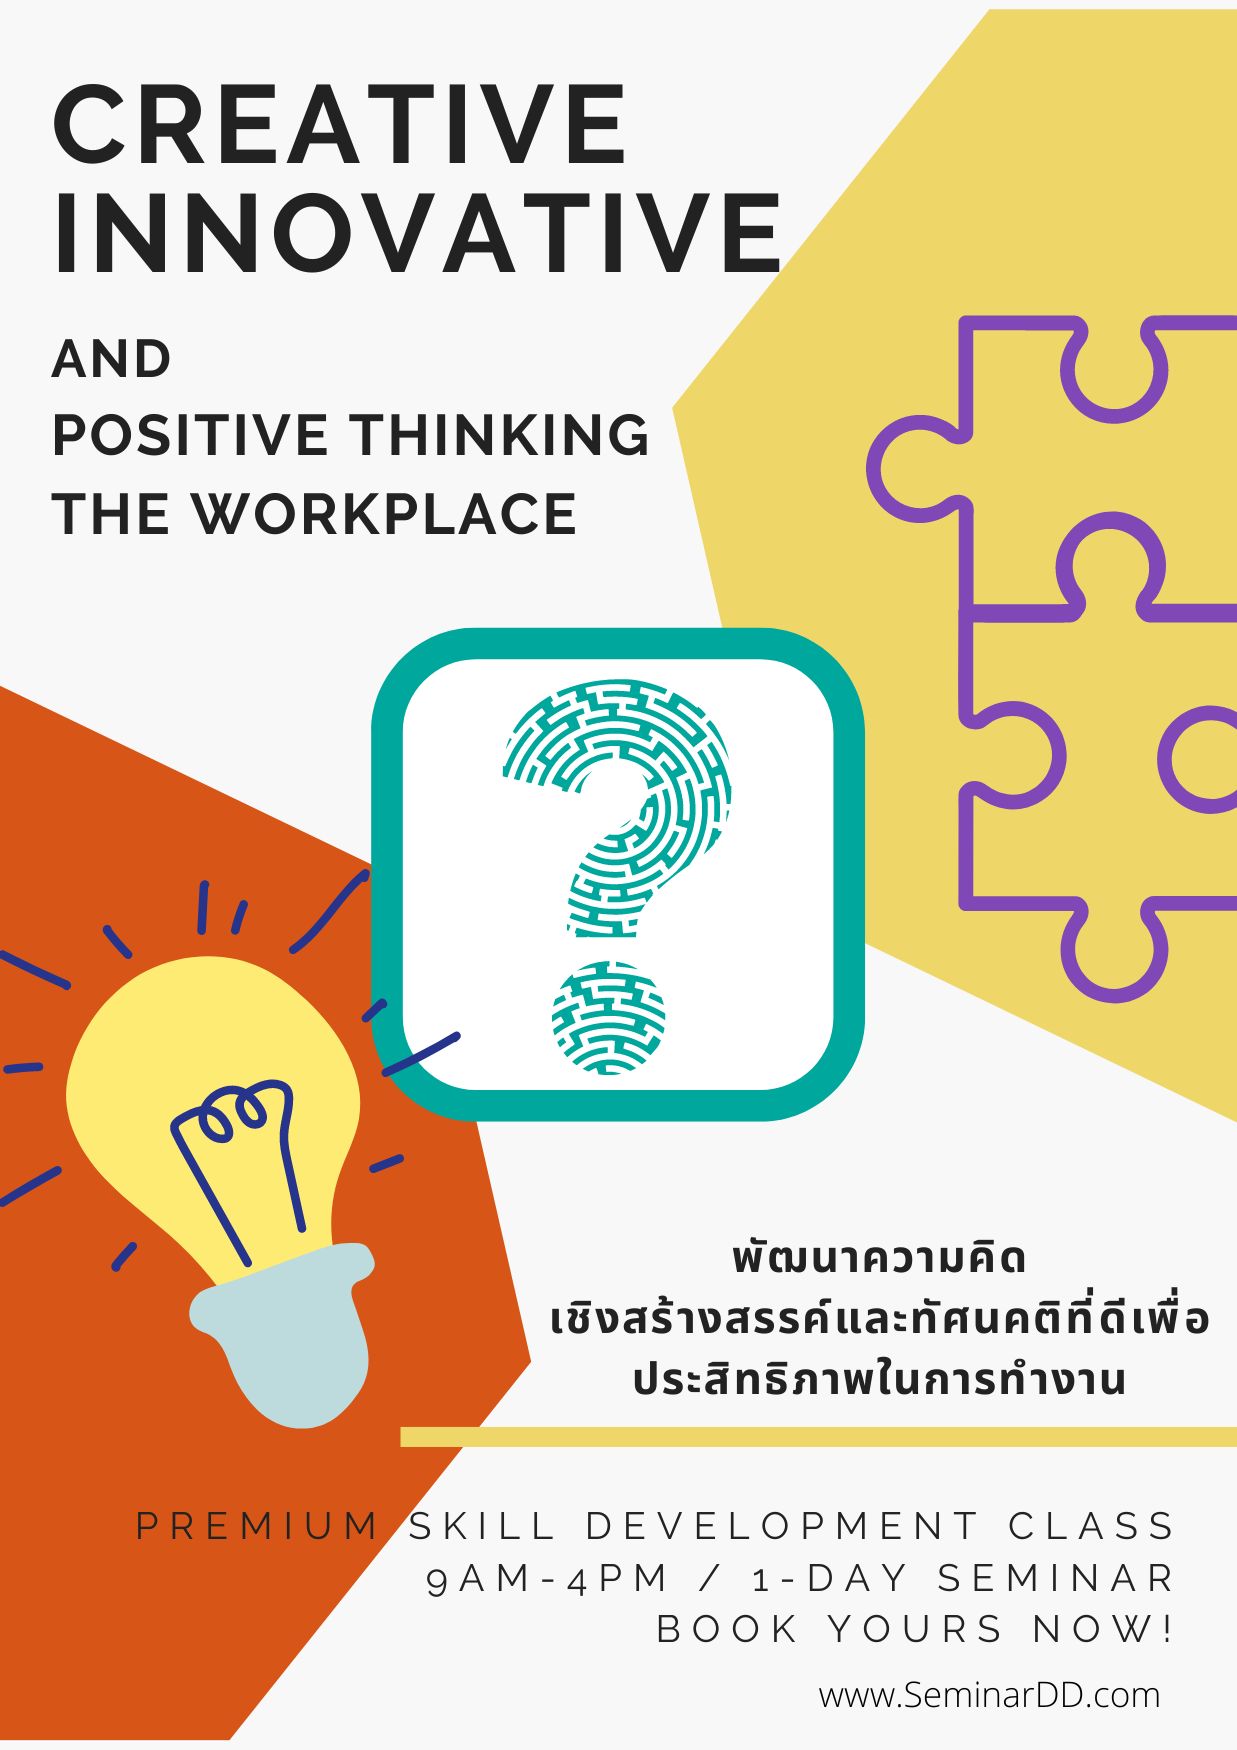 หลักสูตร พัฒนาความคิดเชิงสร้างสรรค์ และทัศนคติที่ดีเพื่อประสิทธิภาพการทำงาน ( Creative Innovative and Positive Thinking in the Workplace ) - อบรมในรูปแบบ Classroom